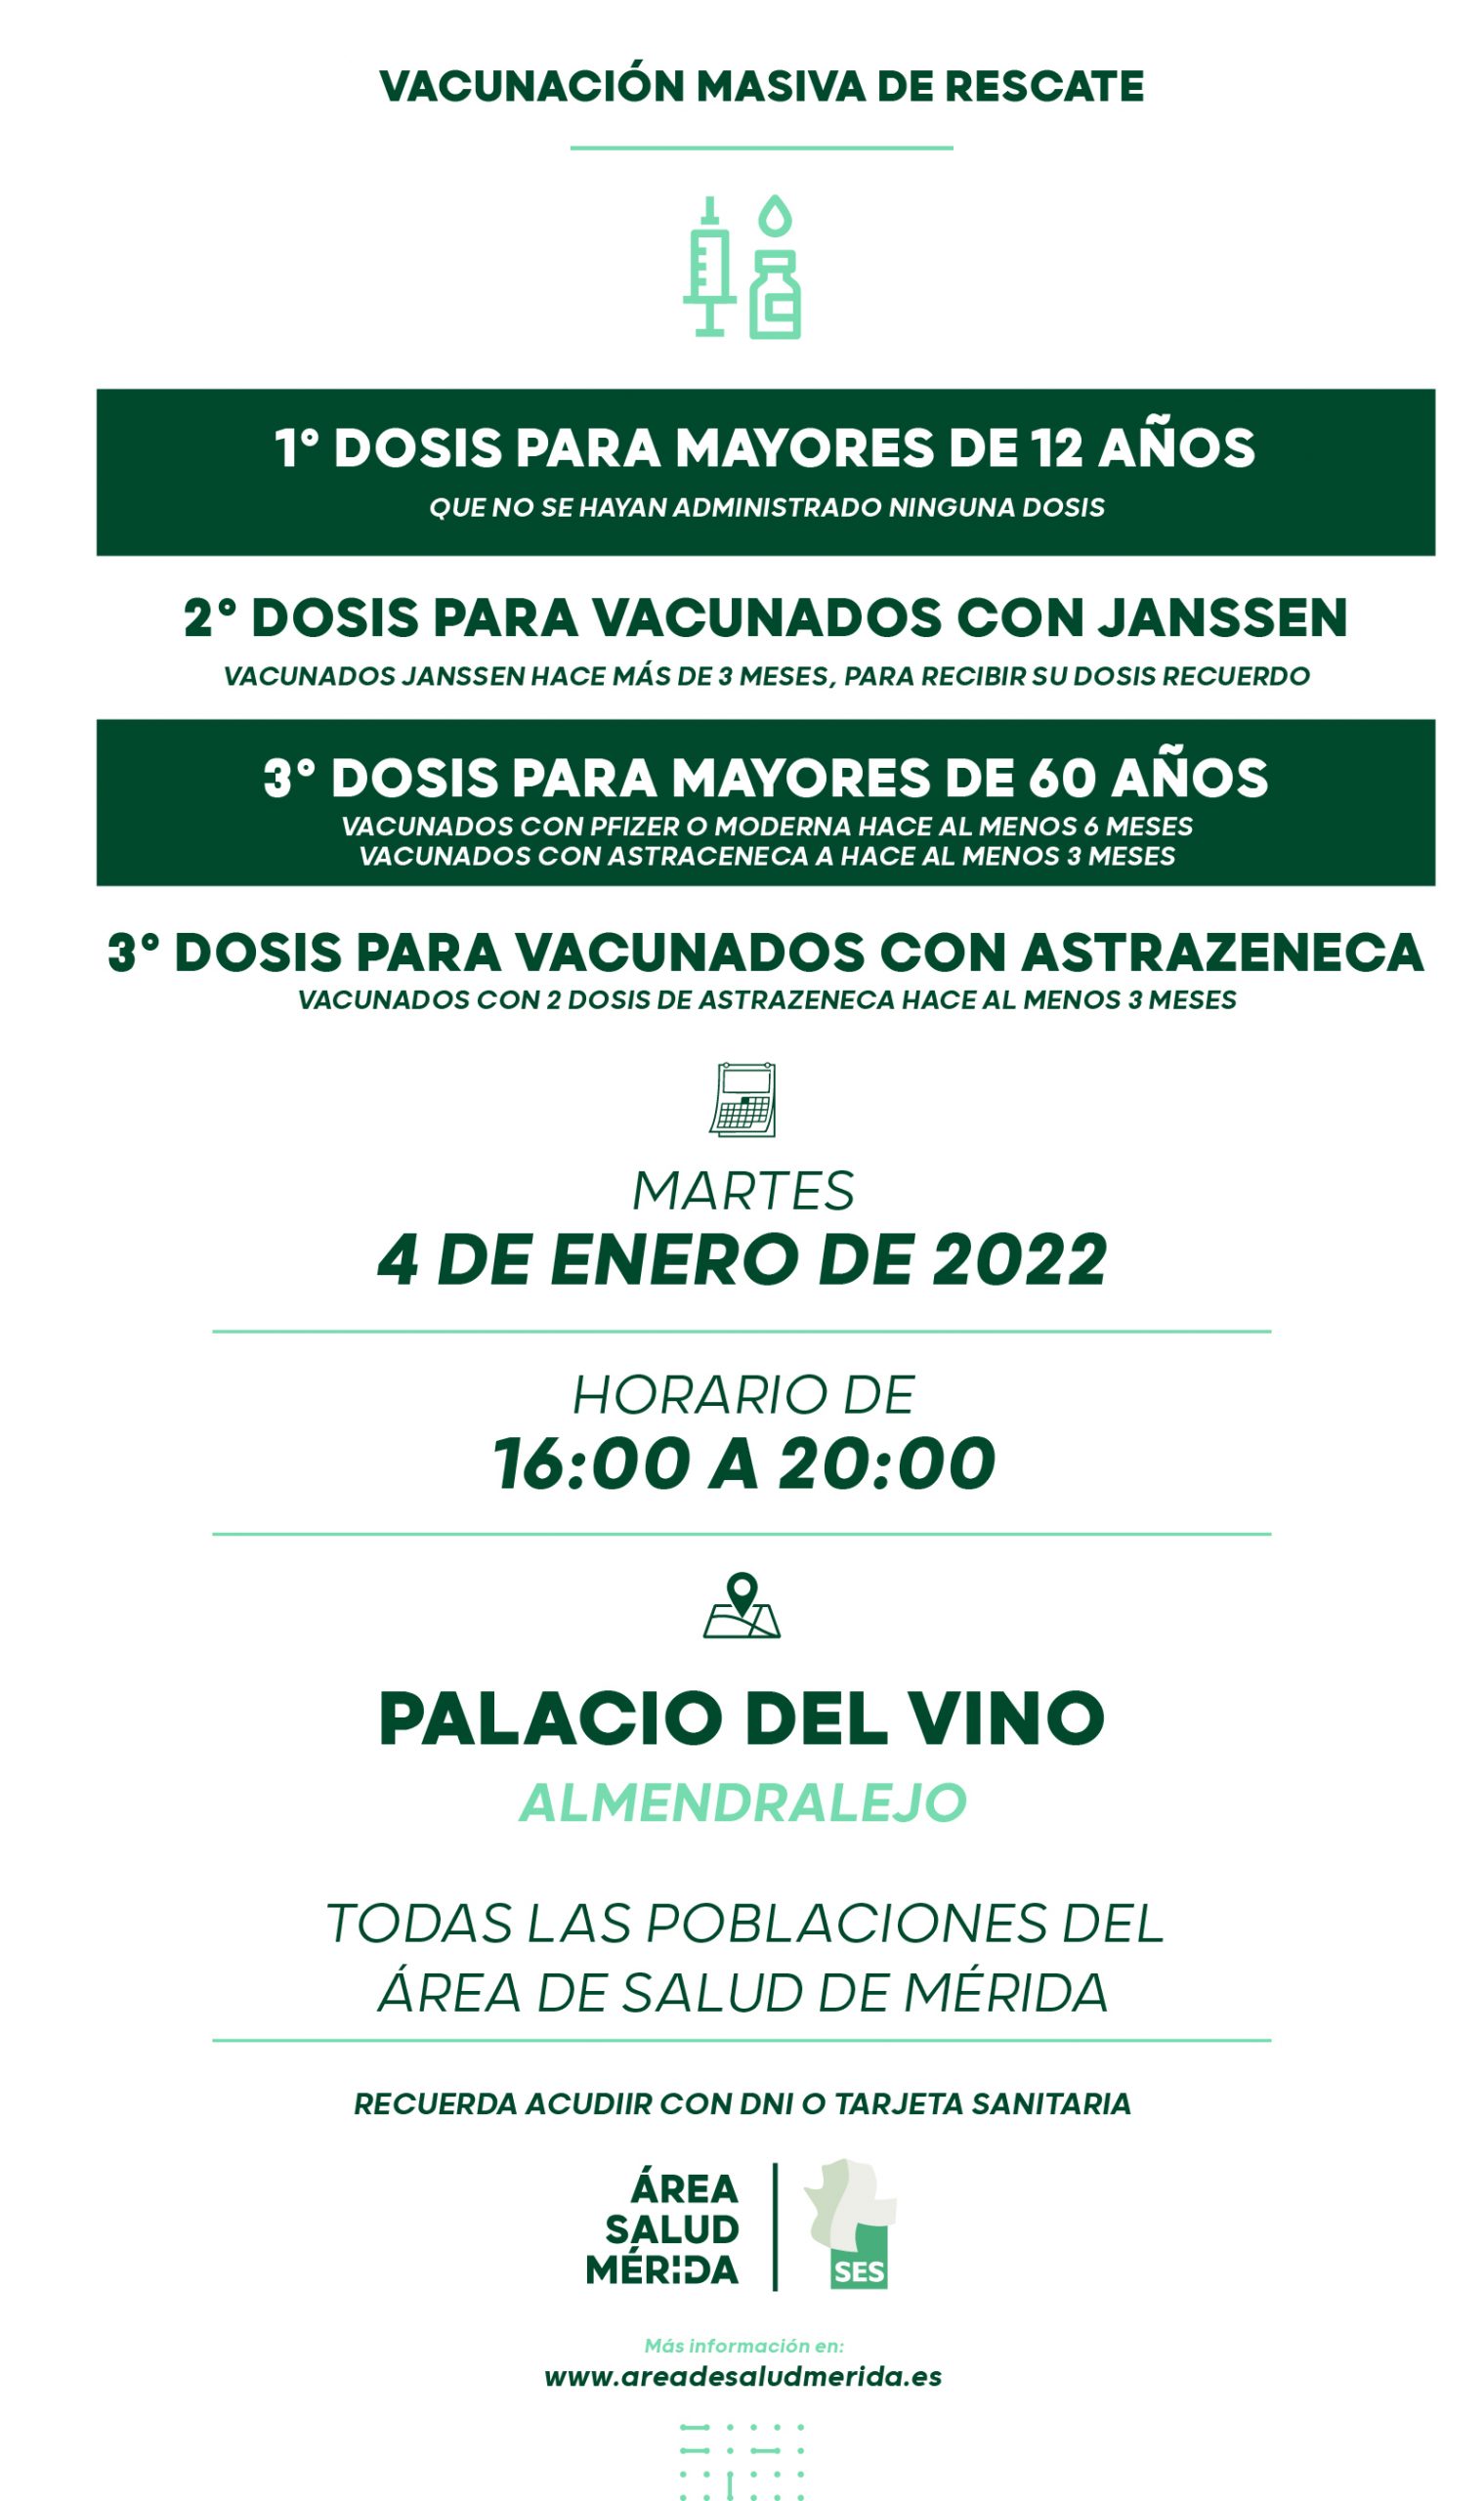 Llamamiento de rescate, viernes 7 de Enero, todas las poblaciones del Área de Salud de Mérida.